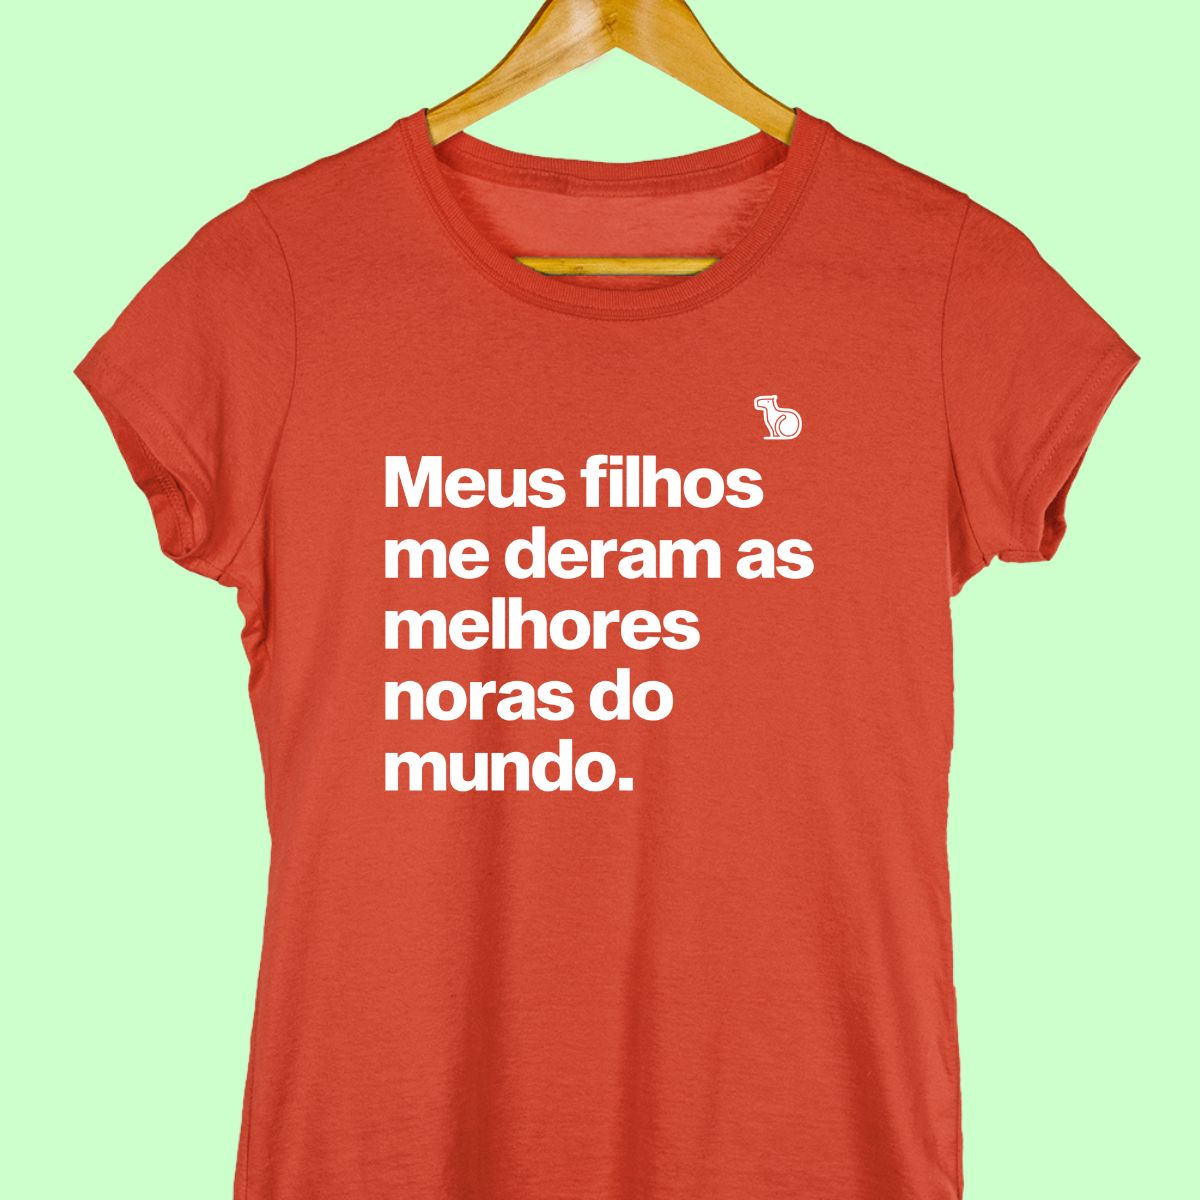 Camiseta com a frase "Meus filhos me deram as melhores noras do mundo." feminina vermelha.